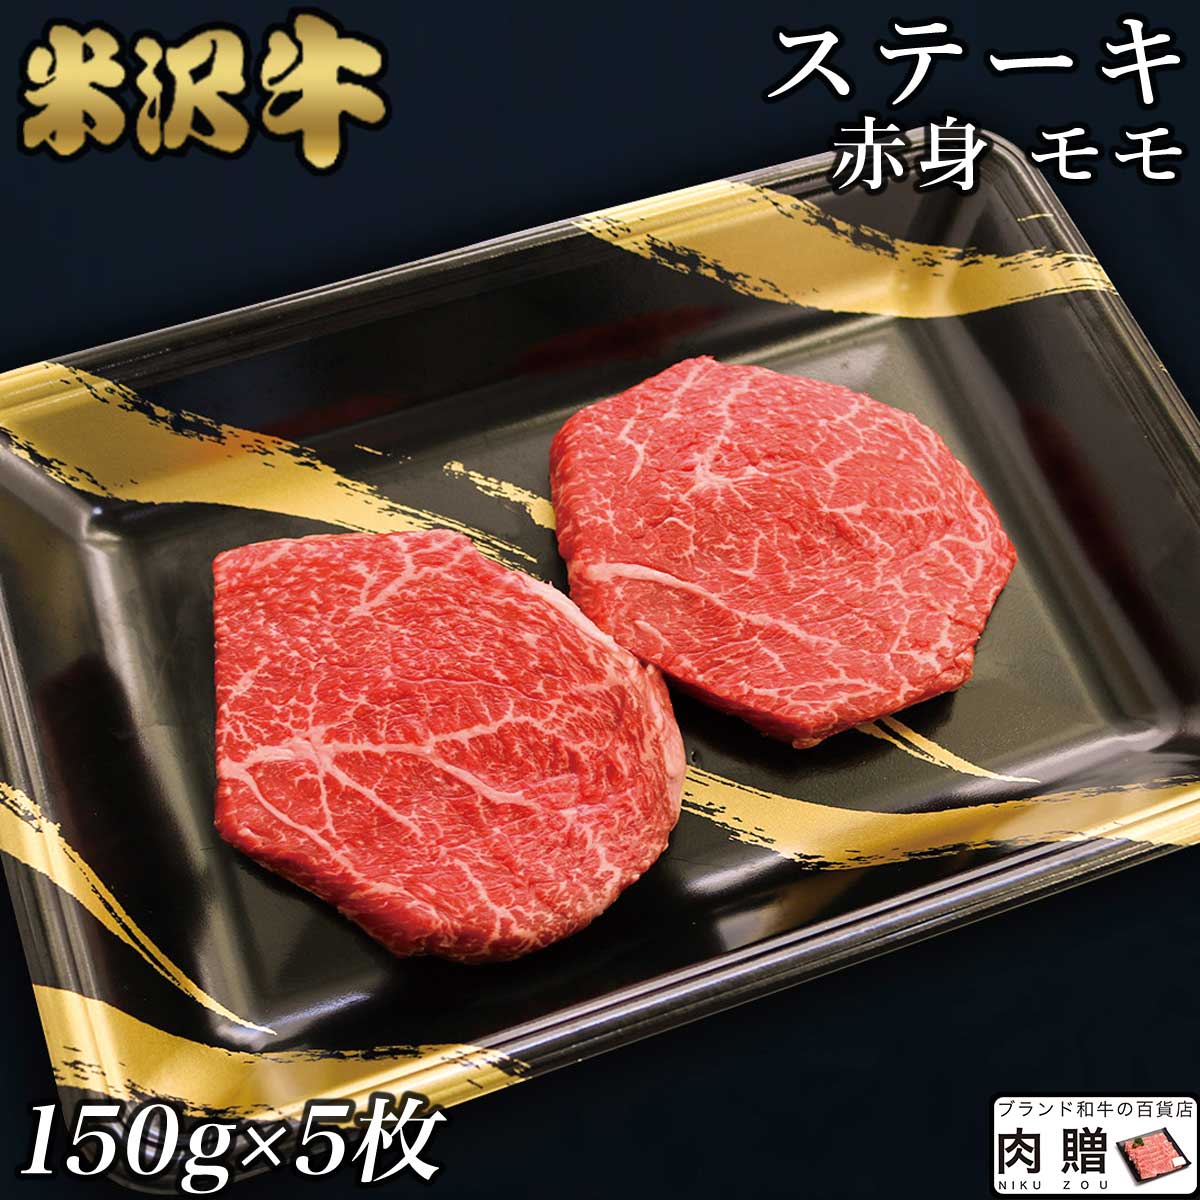 ☆赤身肉 米沢牛 ステーキ モモ 150g×5枚 750g A5 A4 [送料無料] | 肉 赤身肉 塊 ブロック肉 ステーキ 結婚祝い 出産…